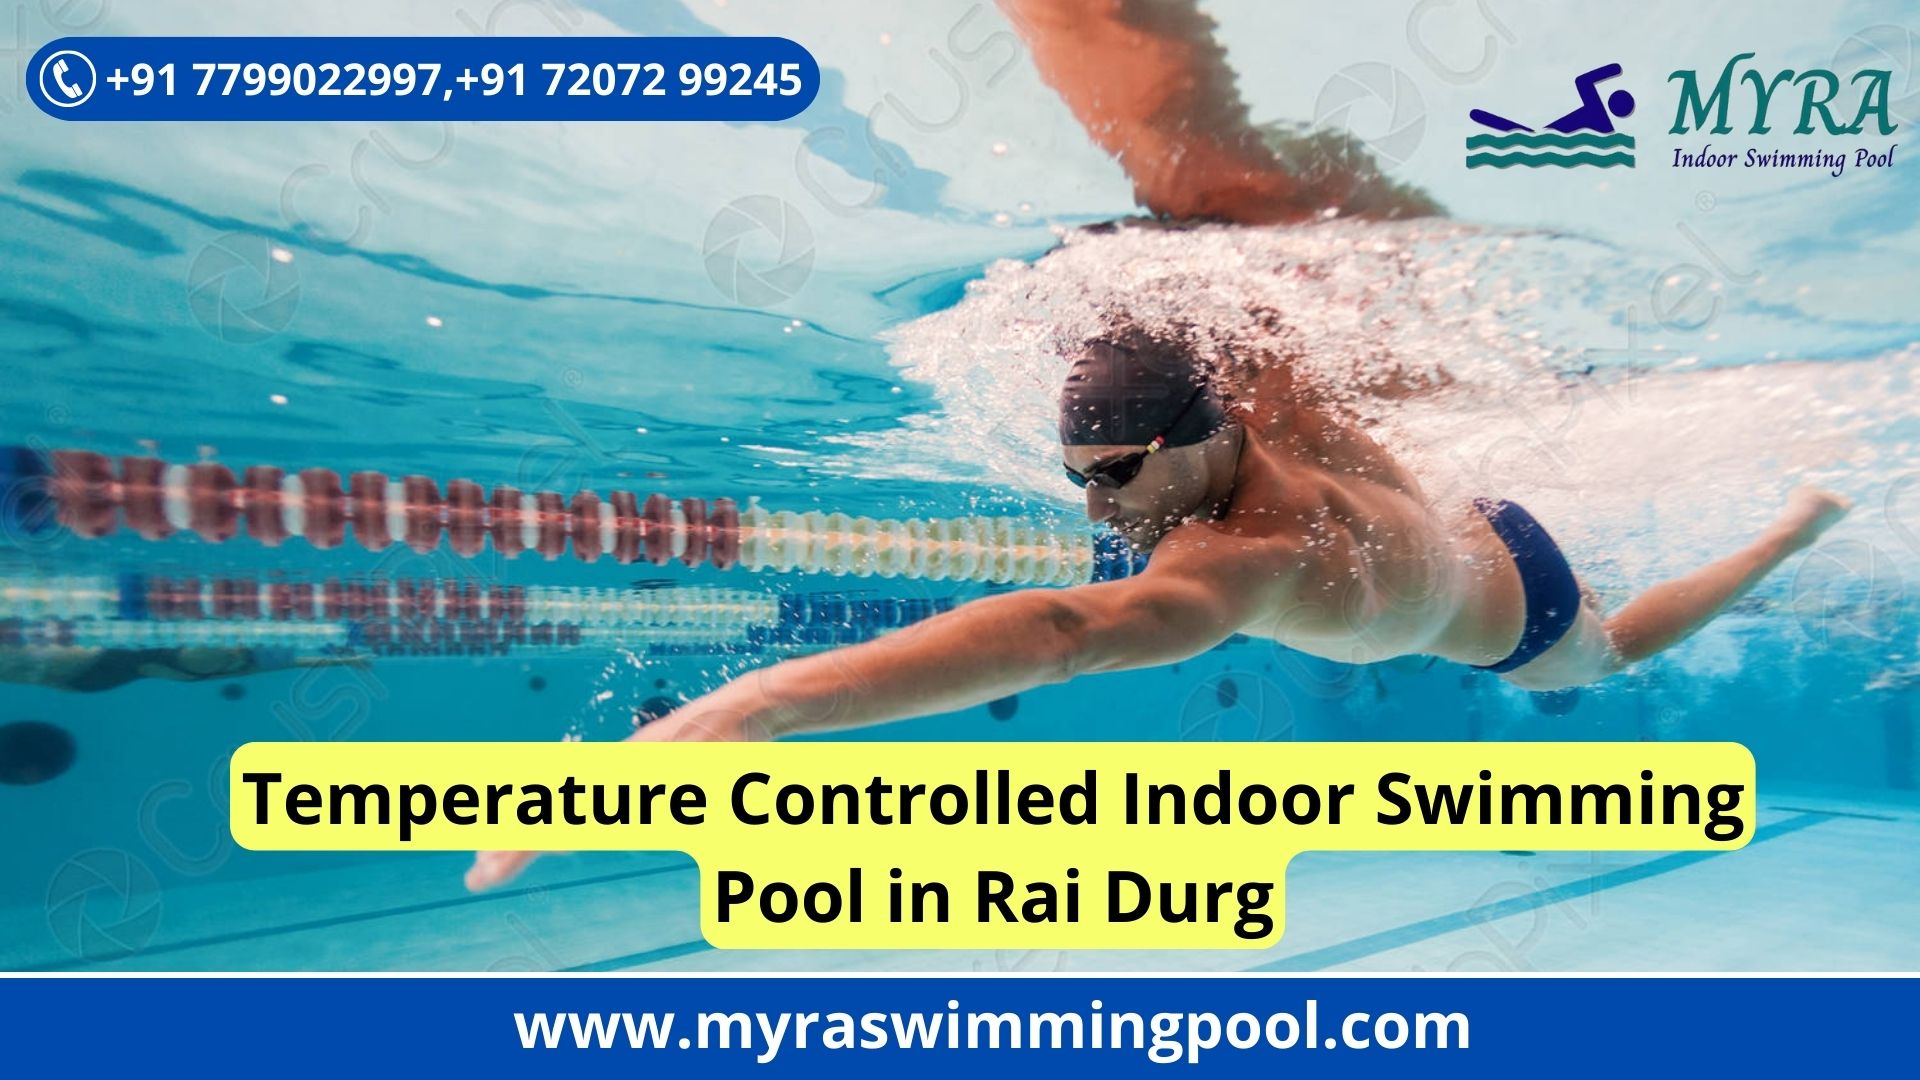 Temperature Controlled Indoor Swimming Pool Near Rai Durg